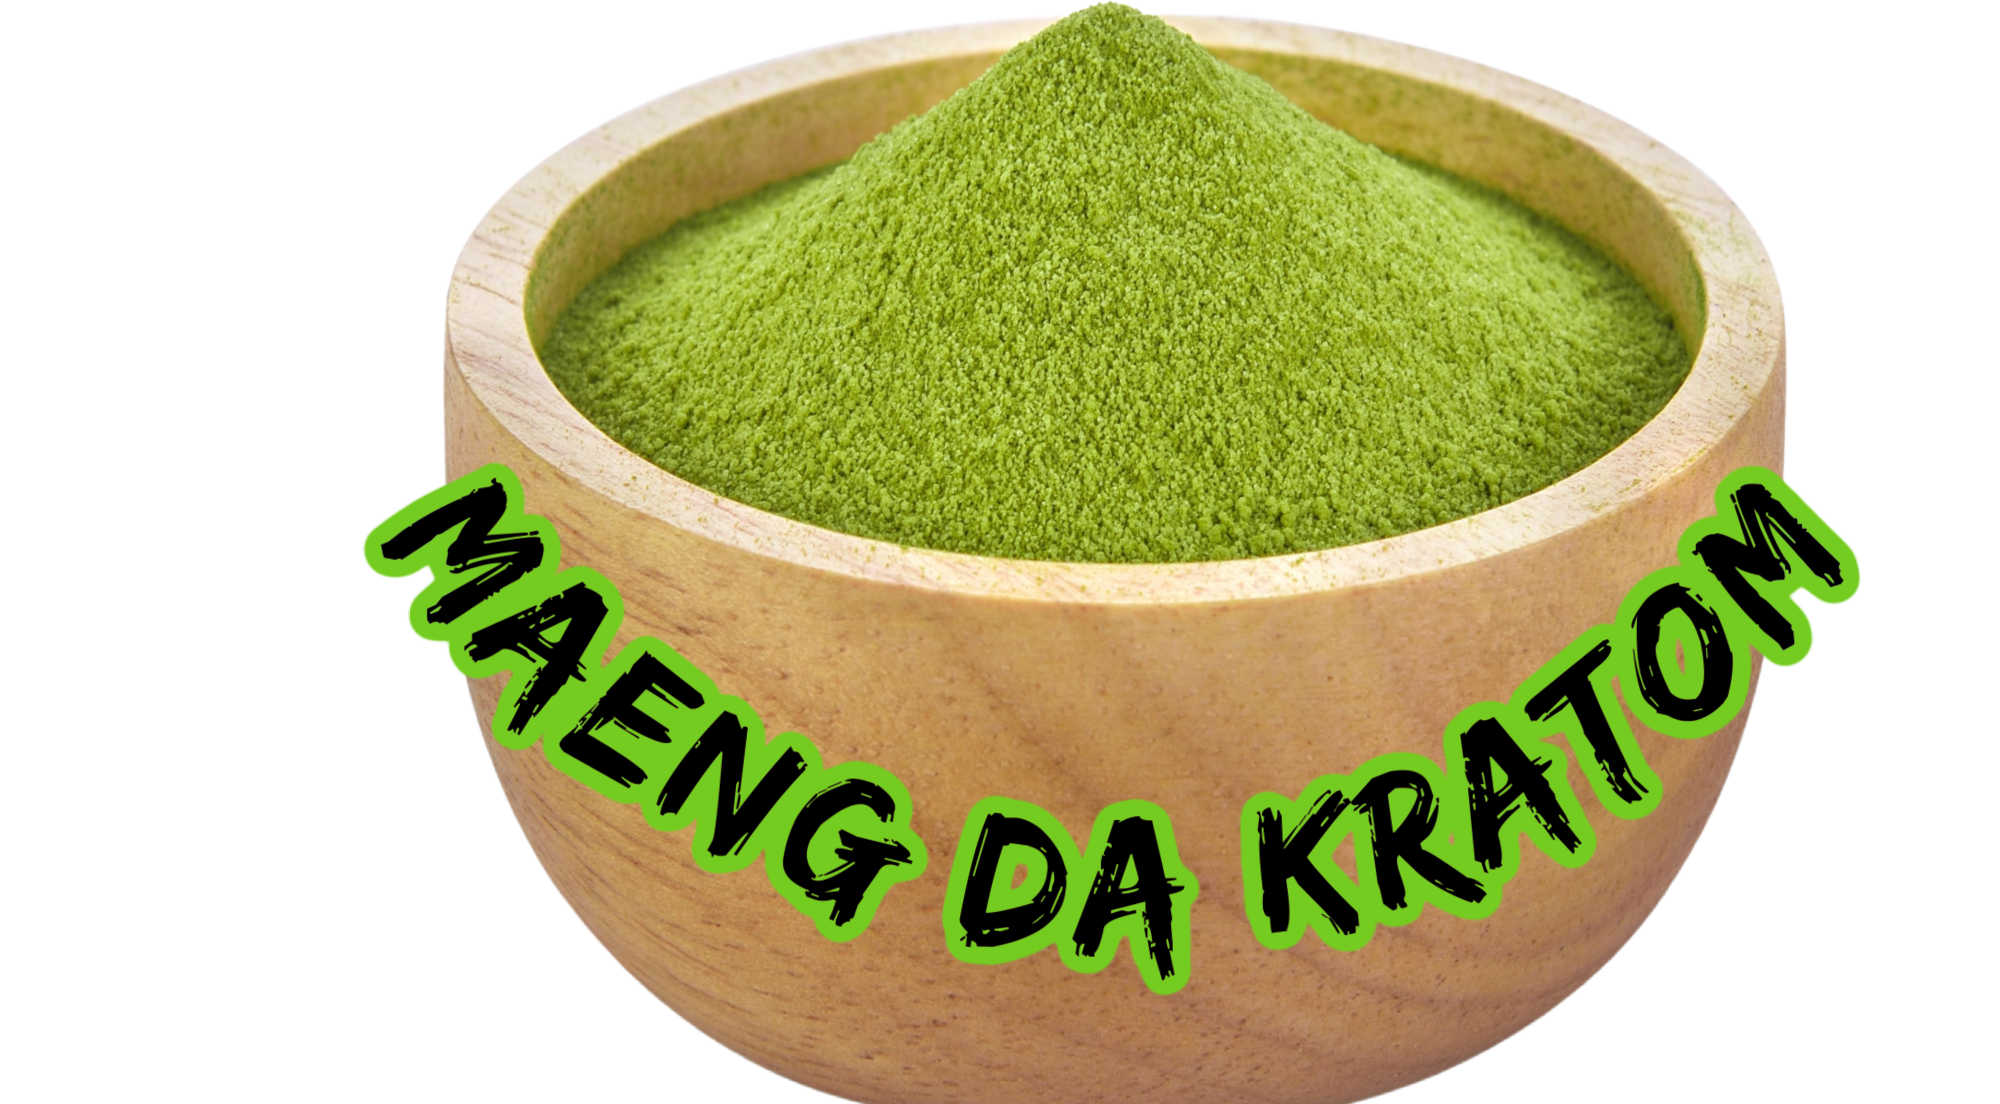 What Does Maeng Da Mean?